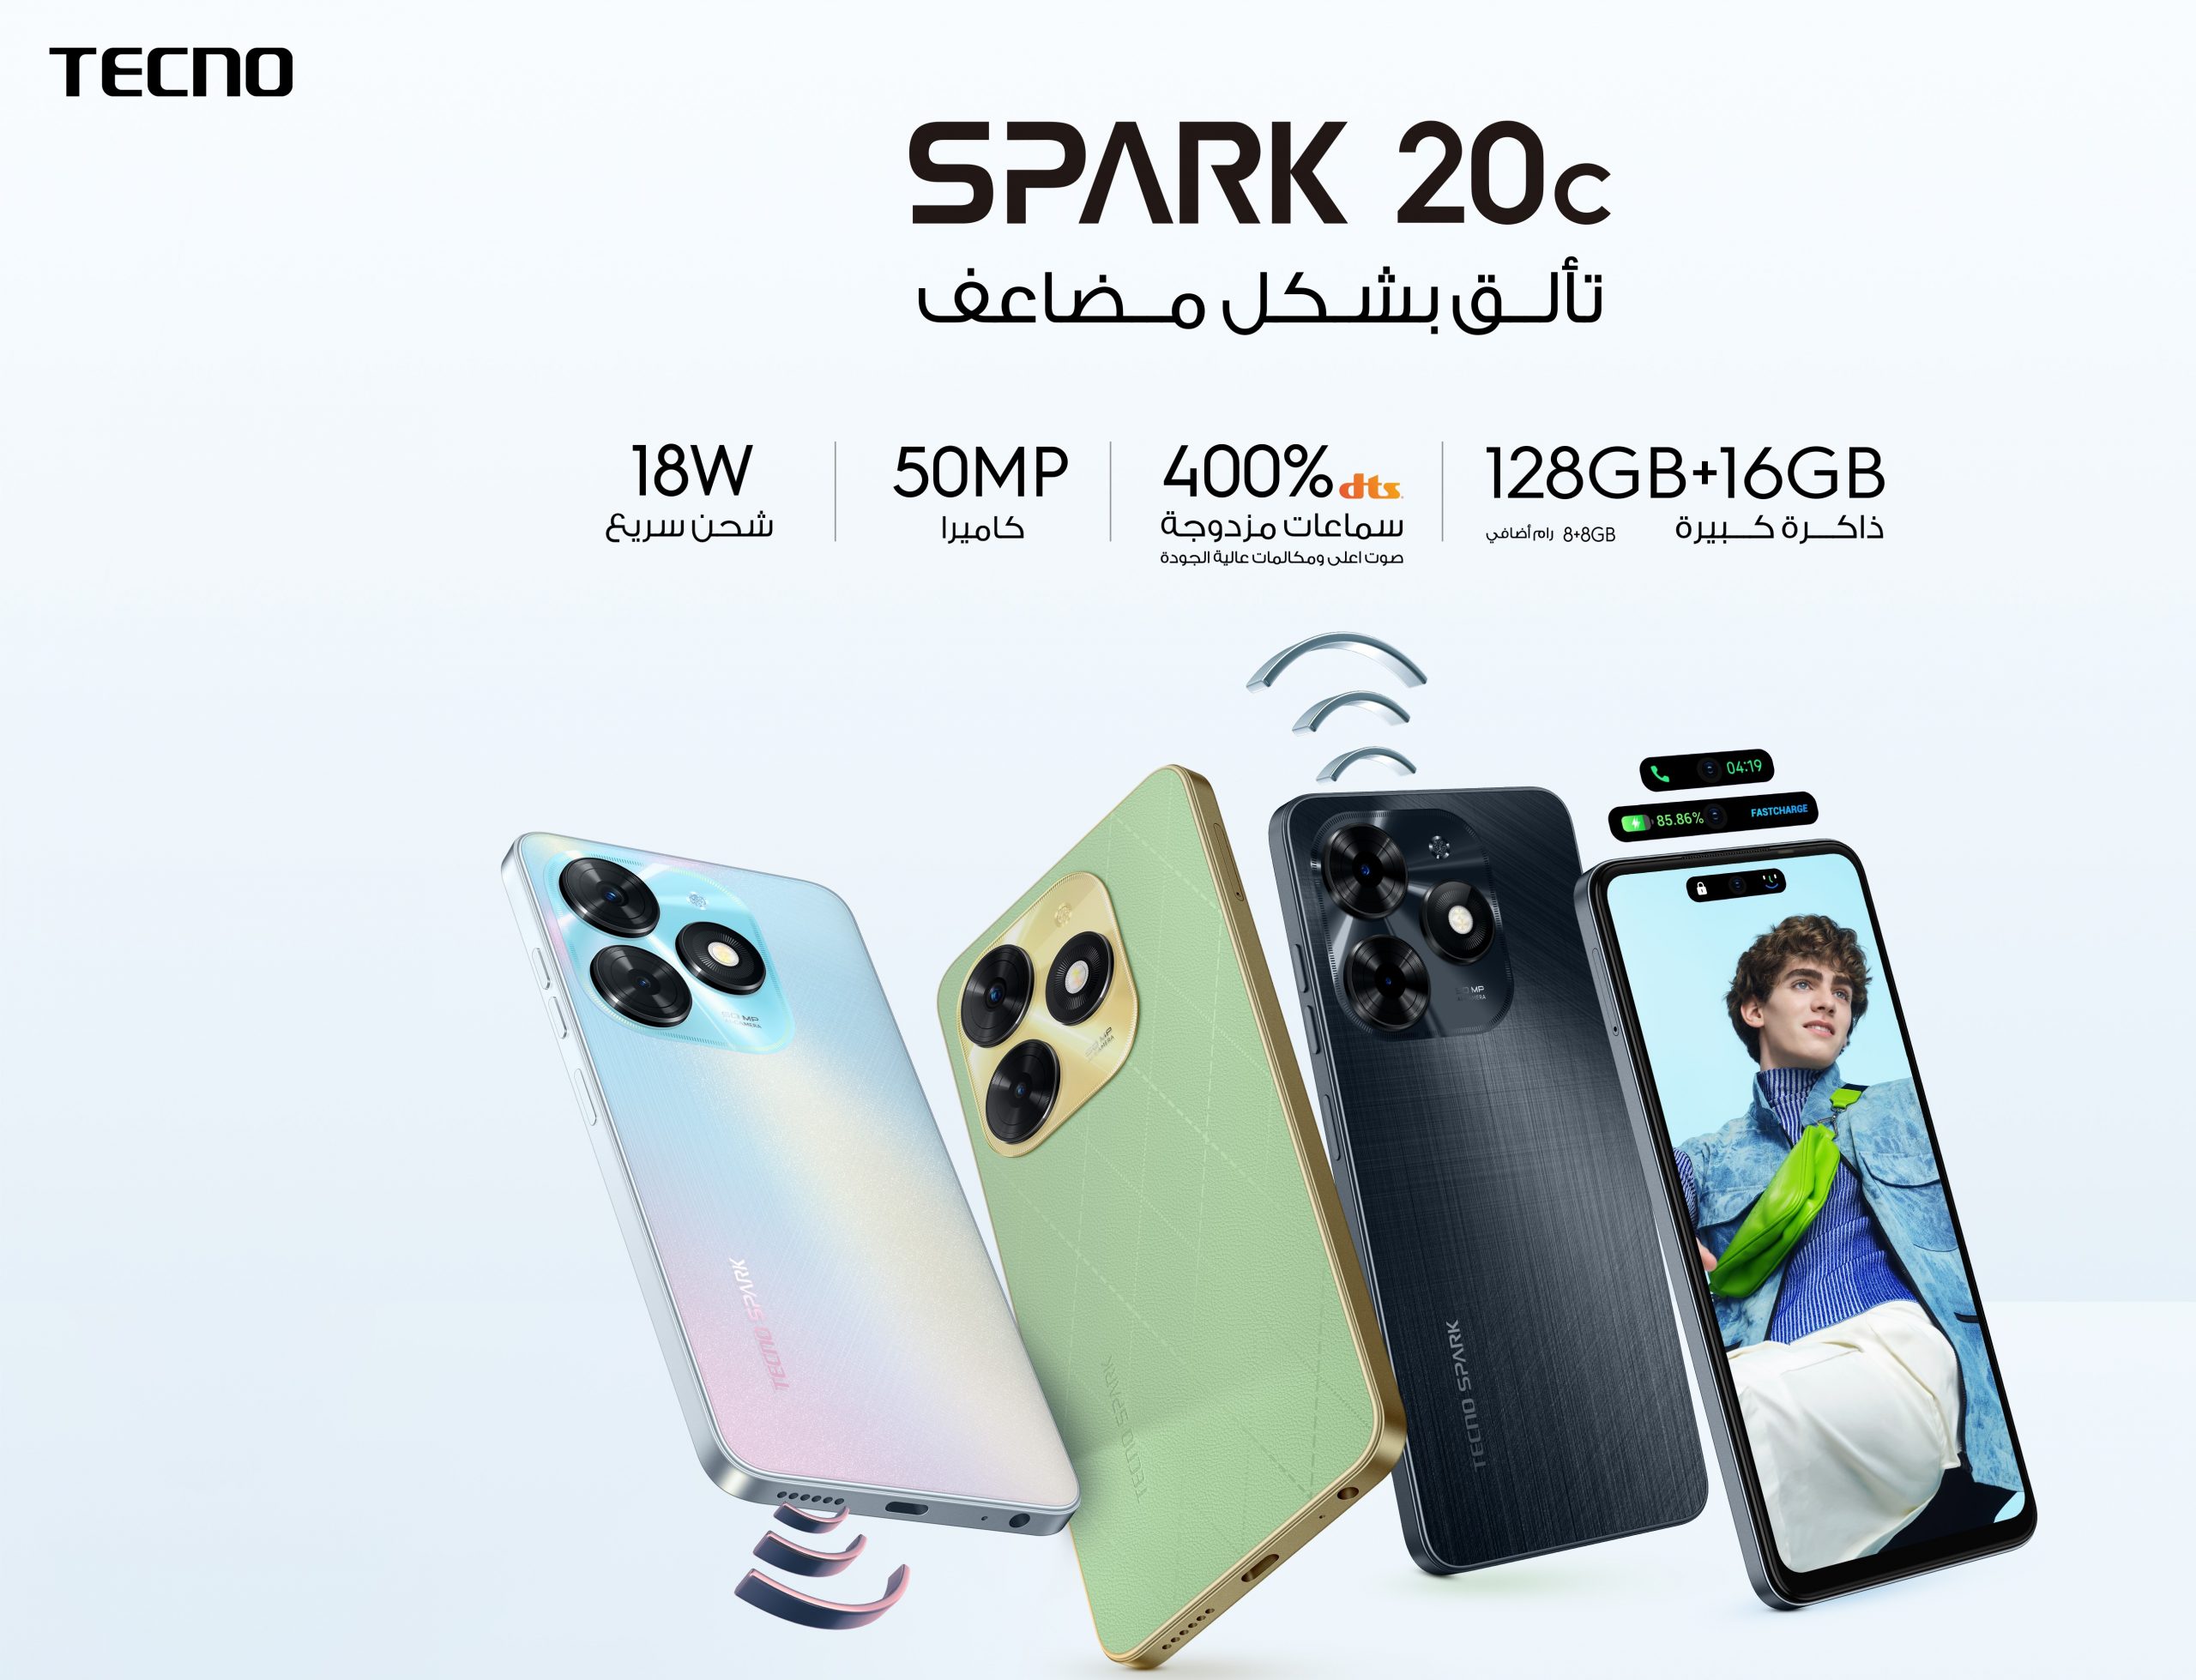 أطلقت TECNO هاتفي SPARK20 و SPARK 20c من سلسلة SPARK 20 المميزة بمواصفات محسنة وابتكارات رئيسية متوفرة الآن في العراق بسعر 110 و 99 دولار فقط